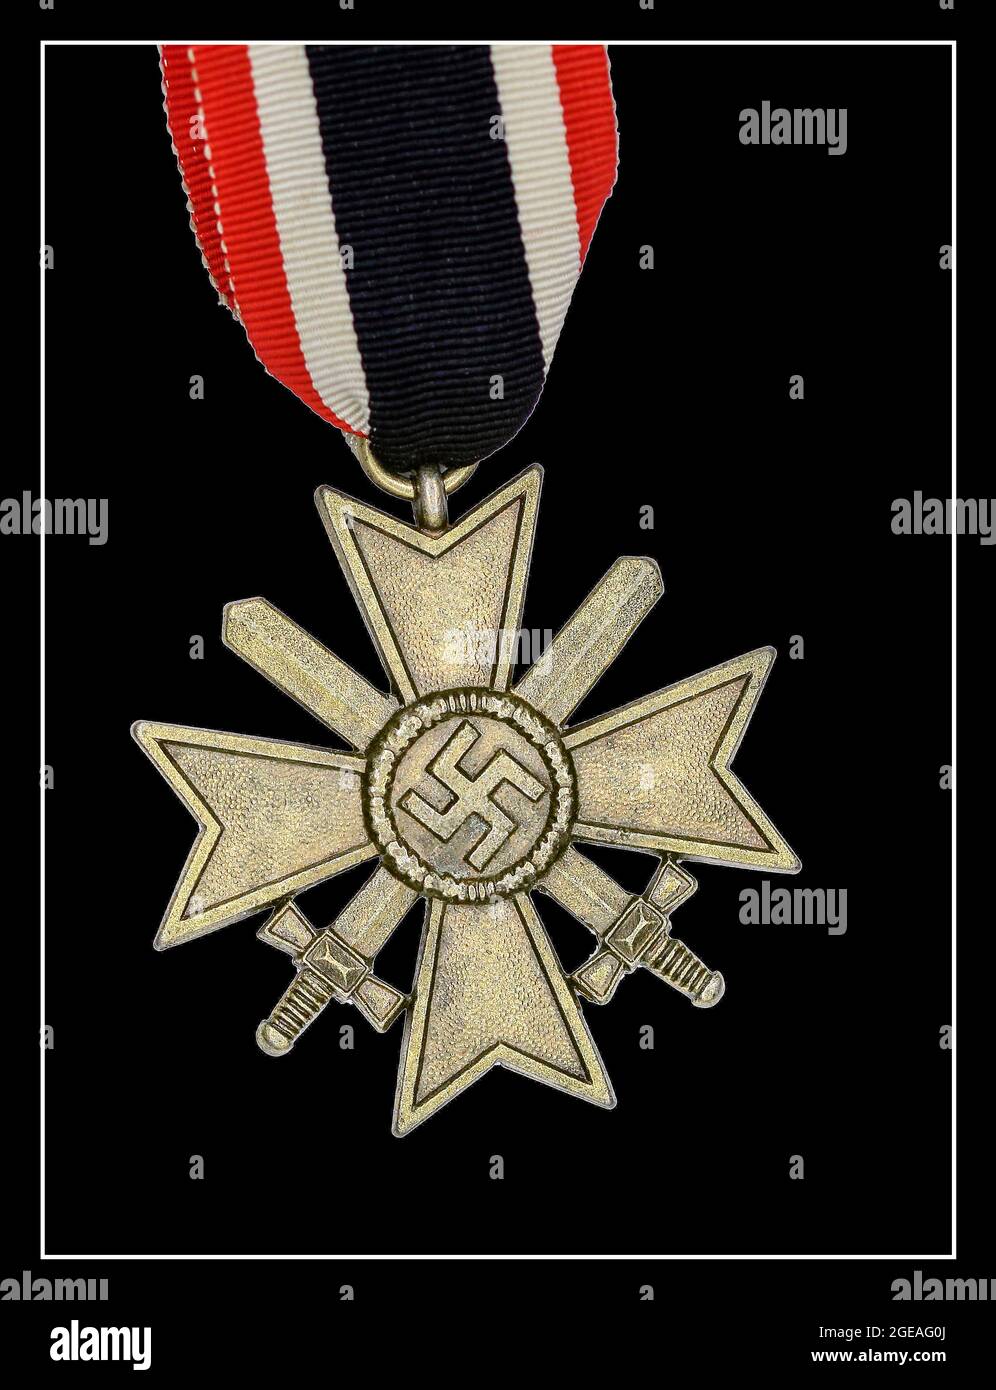 MEDAGLIA DELLA GERMANIA NAZISTA : Croce di merito della guerra (1939) con spade incrociate. Fu una decorazione della Germania nazista durante la seconda guerra mondiale, che poteva essere assegnata sia al personale militare che ai civili. Foto Stock